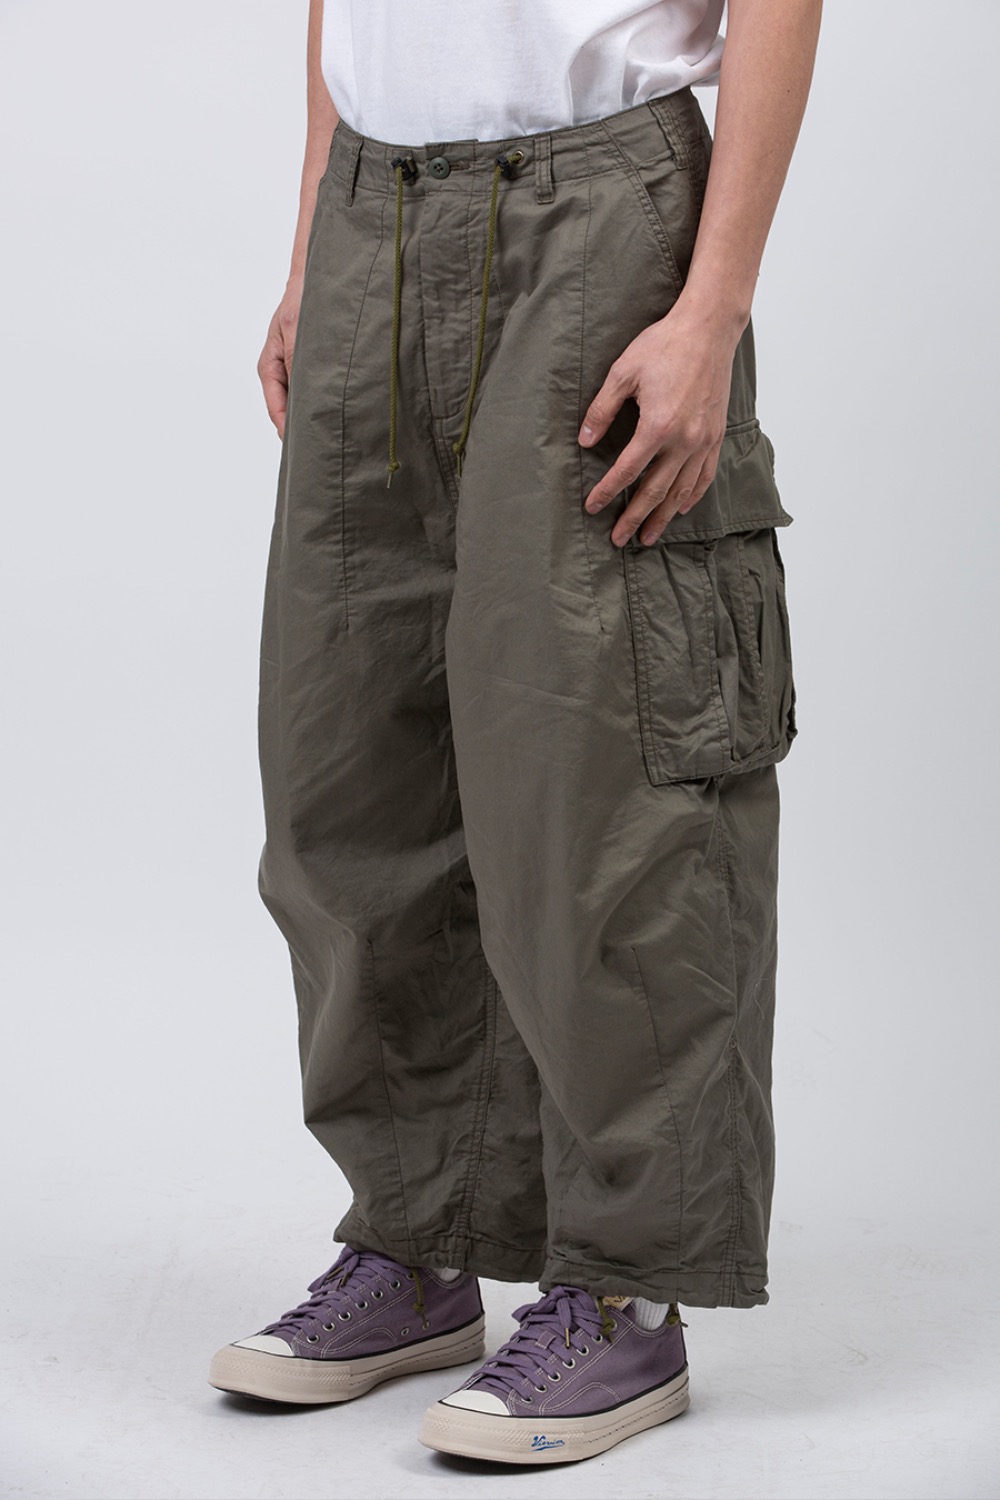 Men's Organic Cotton Fatigue Pants in Dark Moss